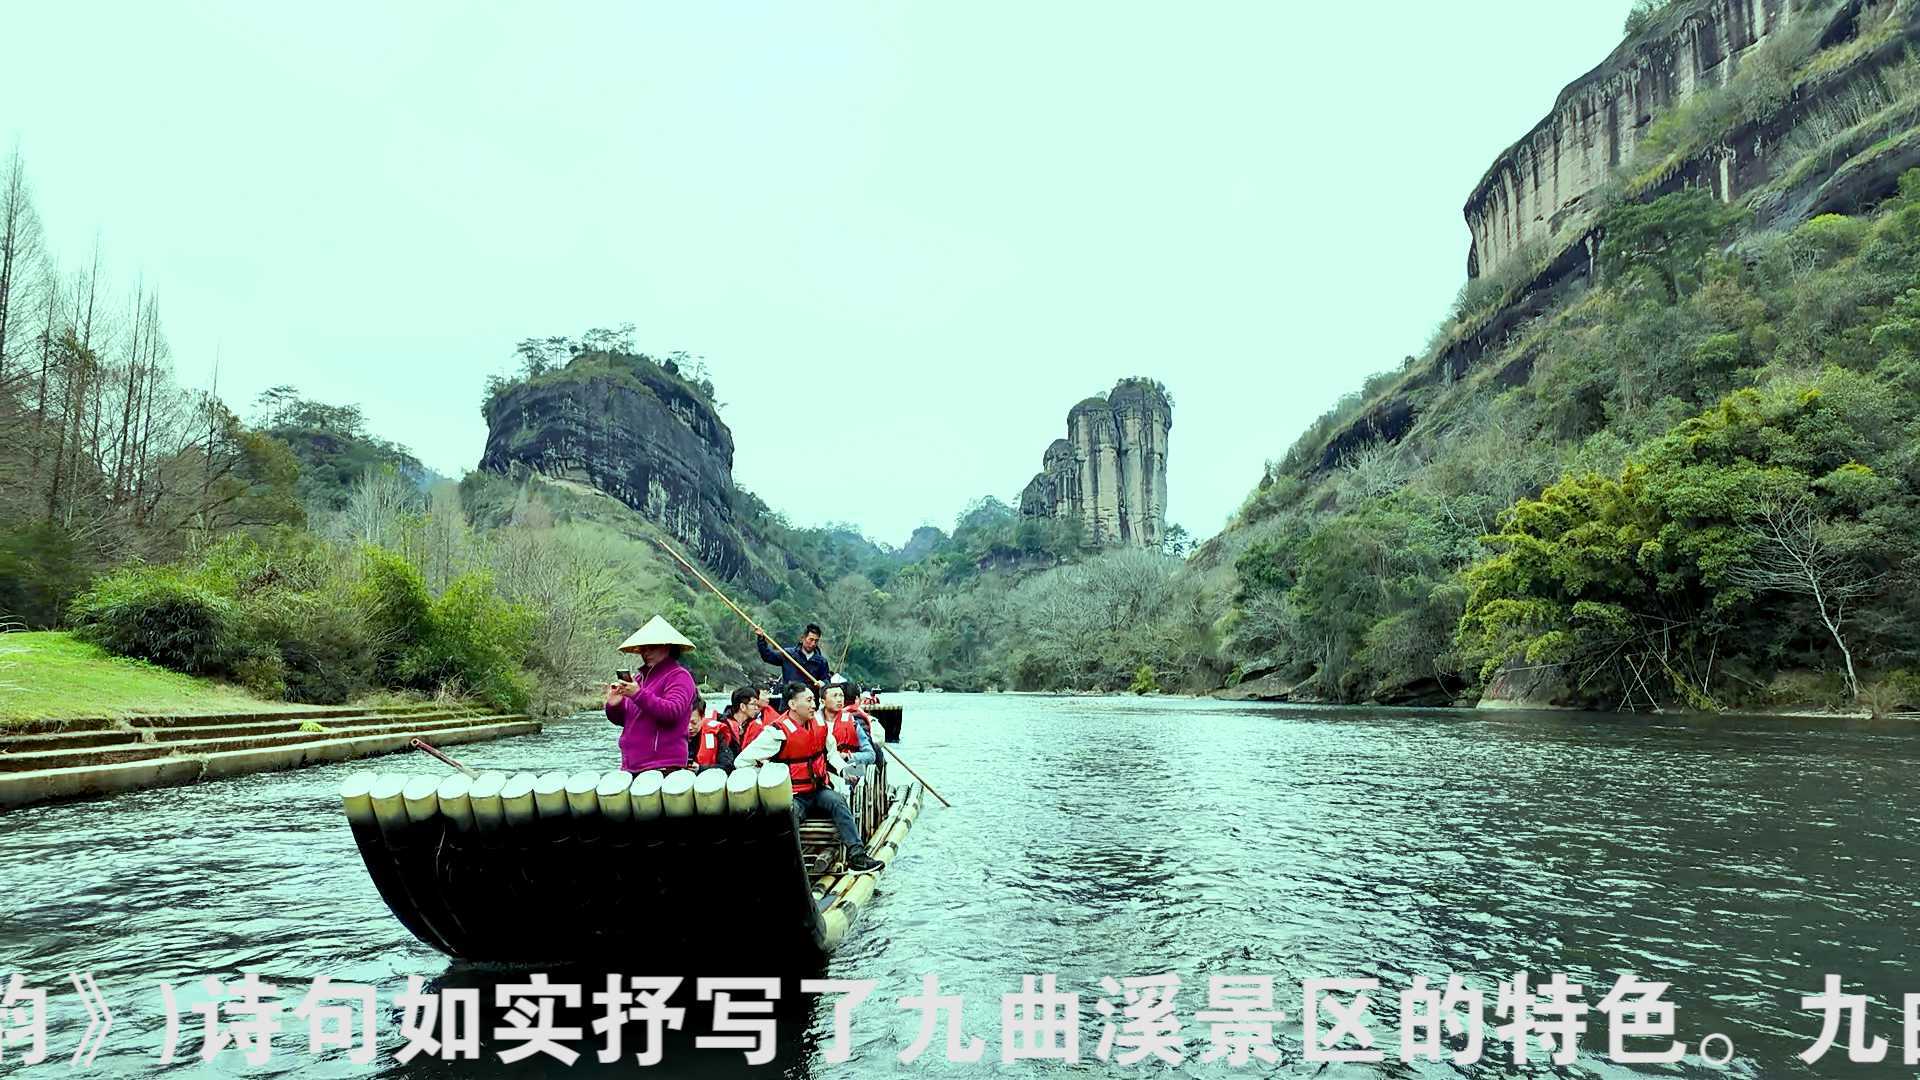 中国最美溪流-武夷山九曲溪漂流纪实